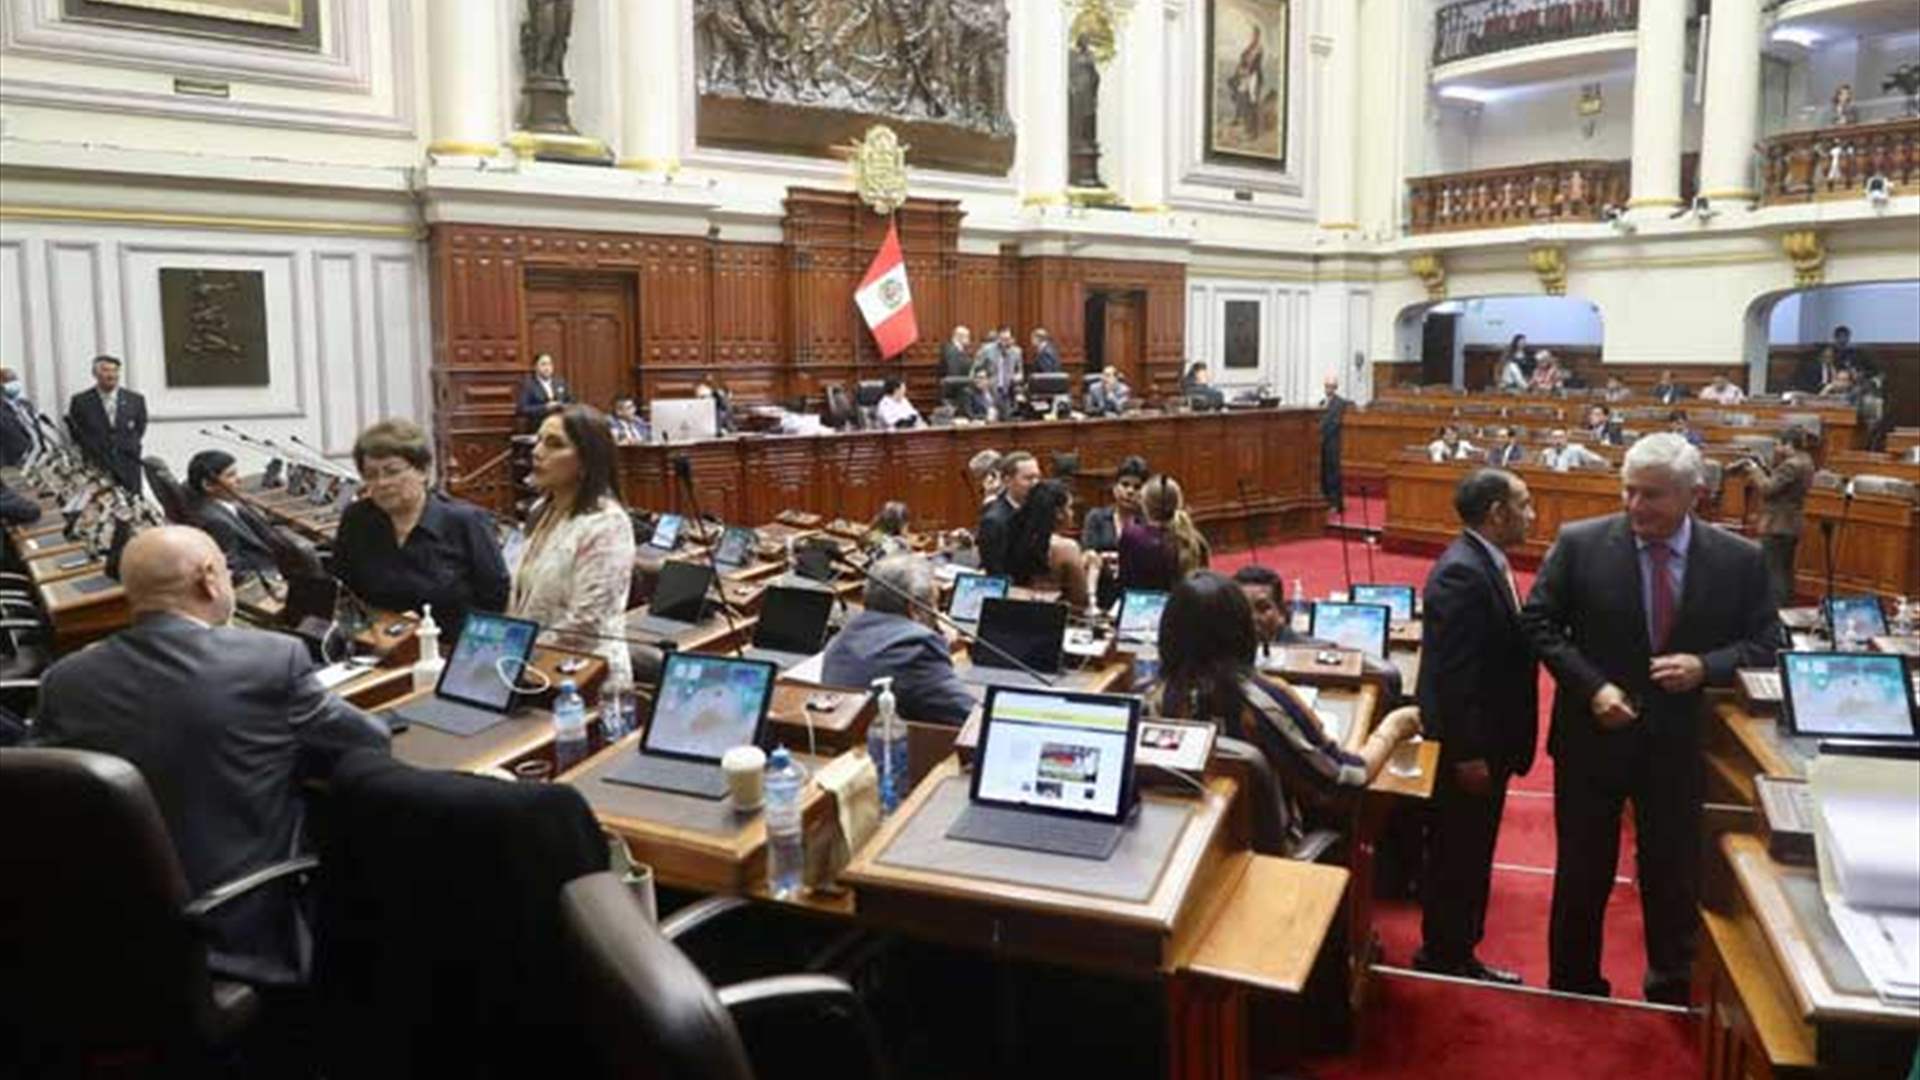 وسط إستمرار الإحتجاجات... برلمان البيرو يخفق في التوصل إلى إتفاق حول إجراء إنتخابات مبكرة 